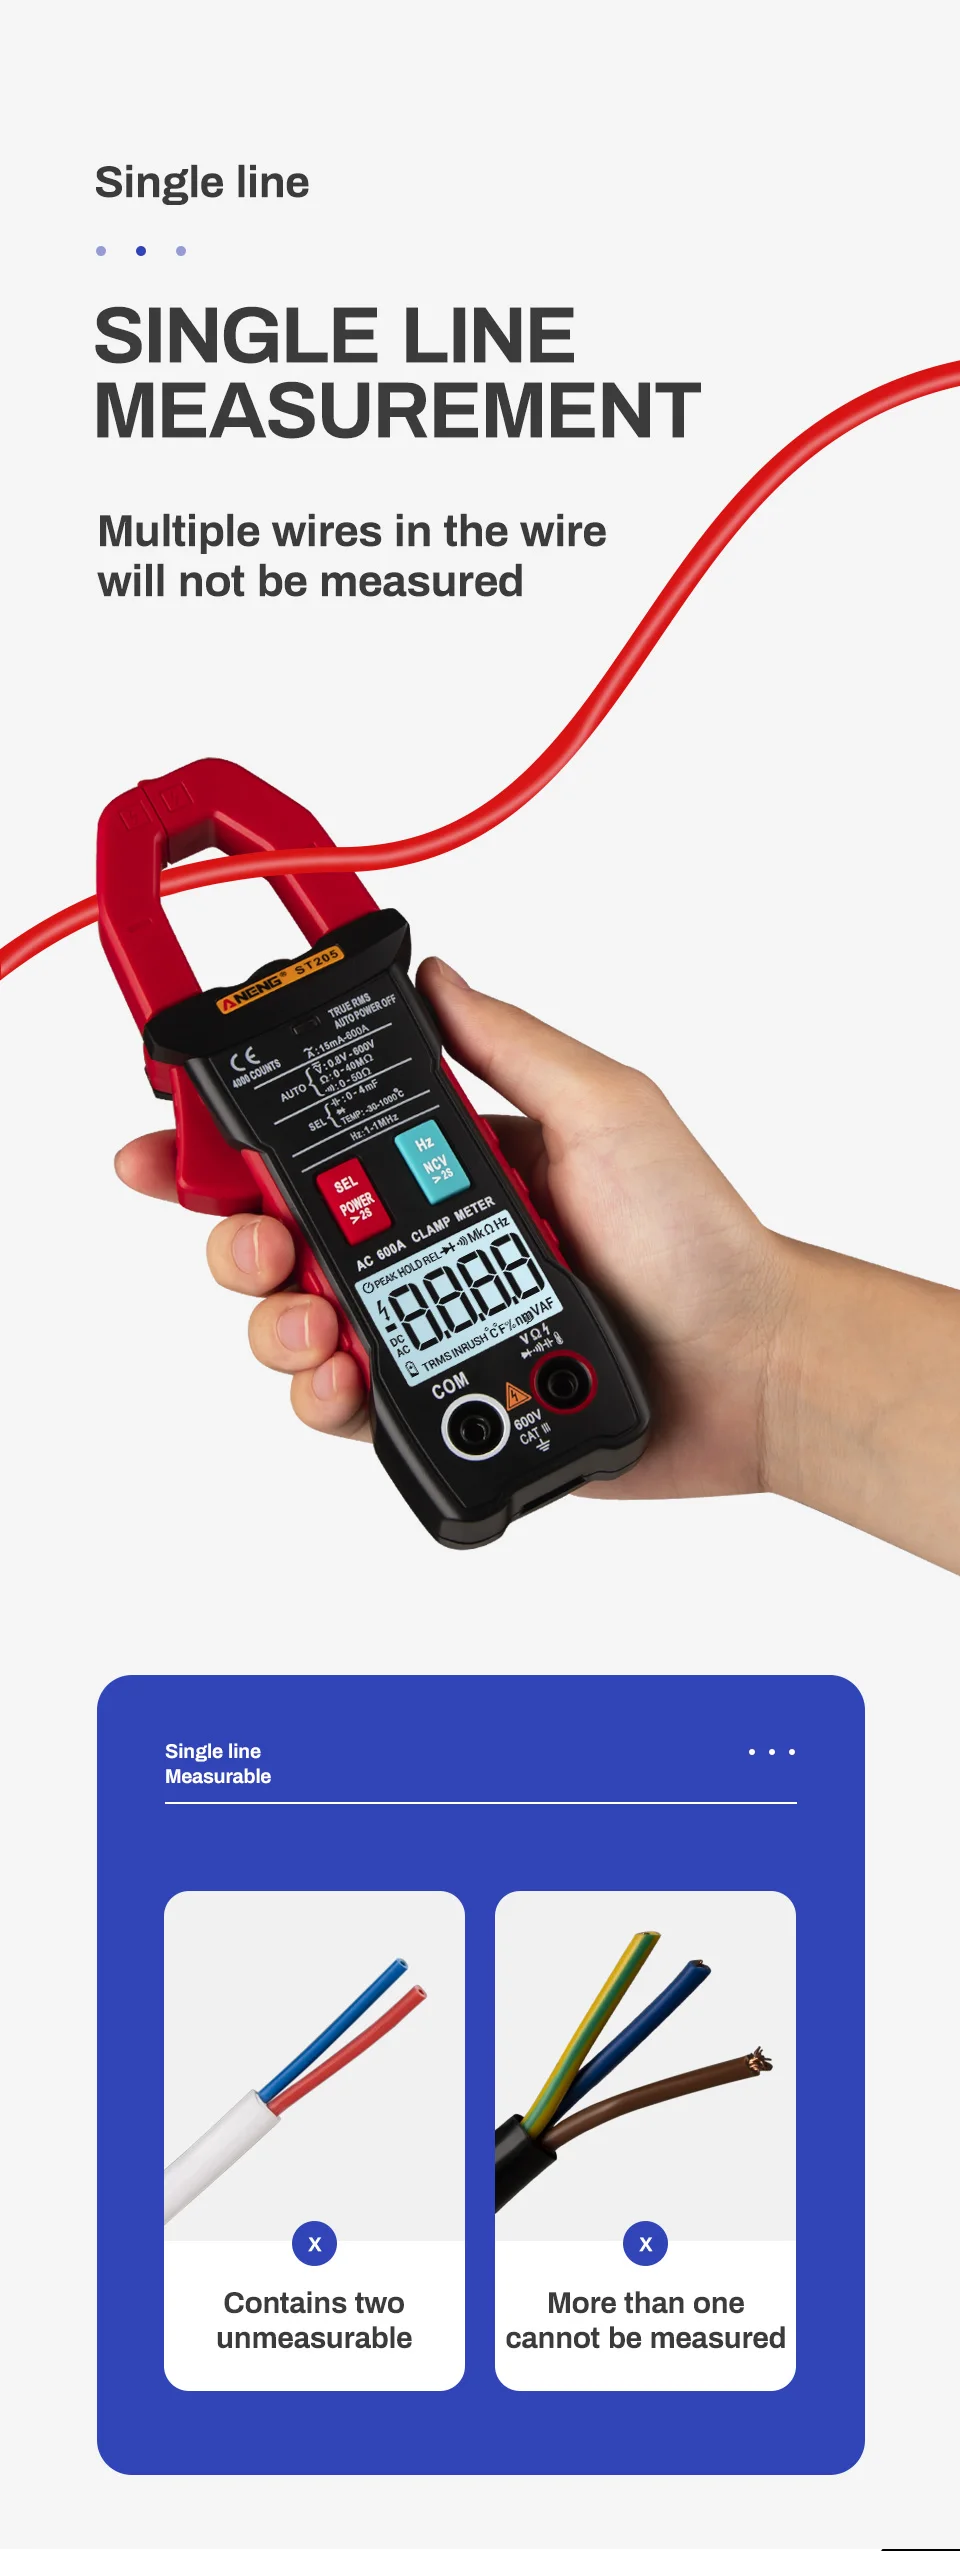 ANENG ST205 Kỹ Thuật Số Clamp Meter Analog Vạn Năng Hiện Tại Kẹp DC/AC Tự Động Thông Minh Phạm Vi Meter Với Nhiệt Độ Tester